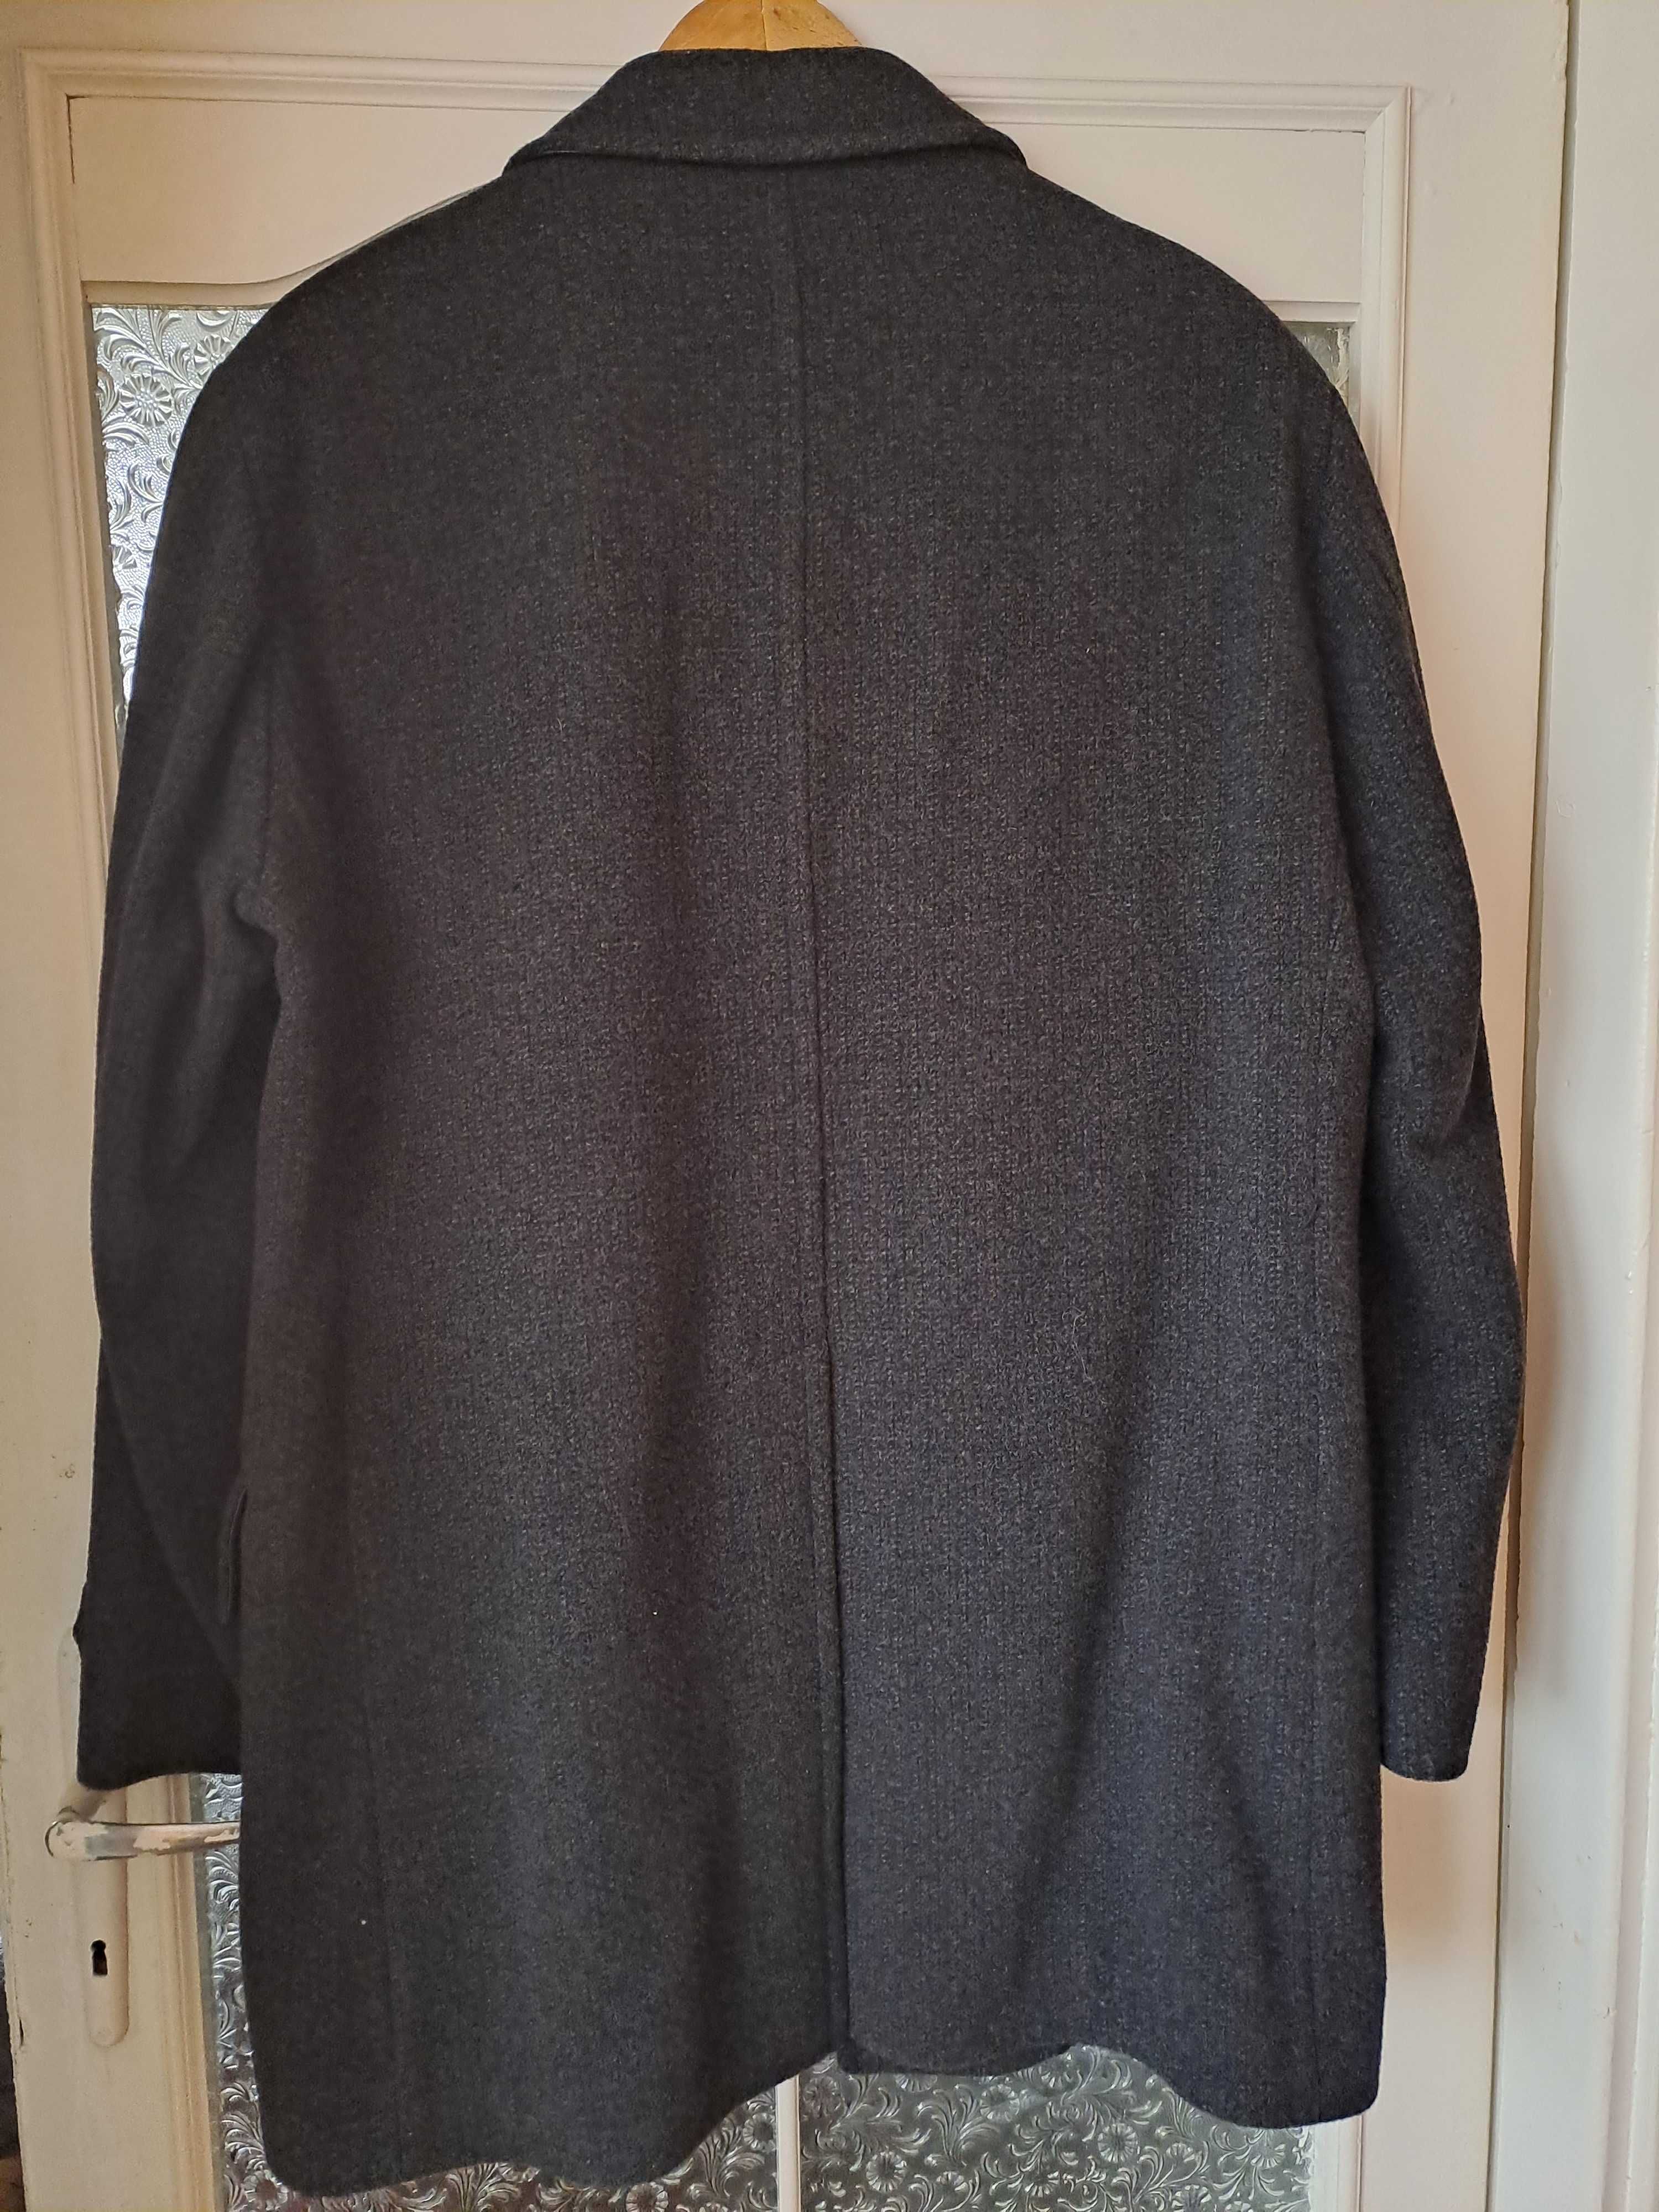 Męski elegancki płaszcz grafit firmy Coratex rozmiar XL klasyczny krój